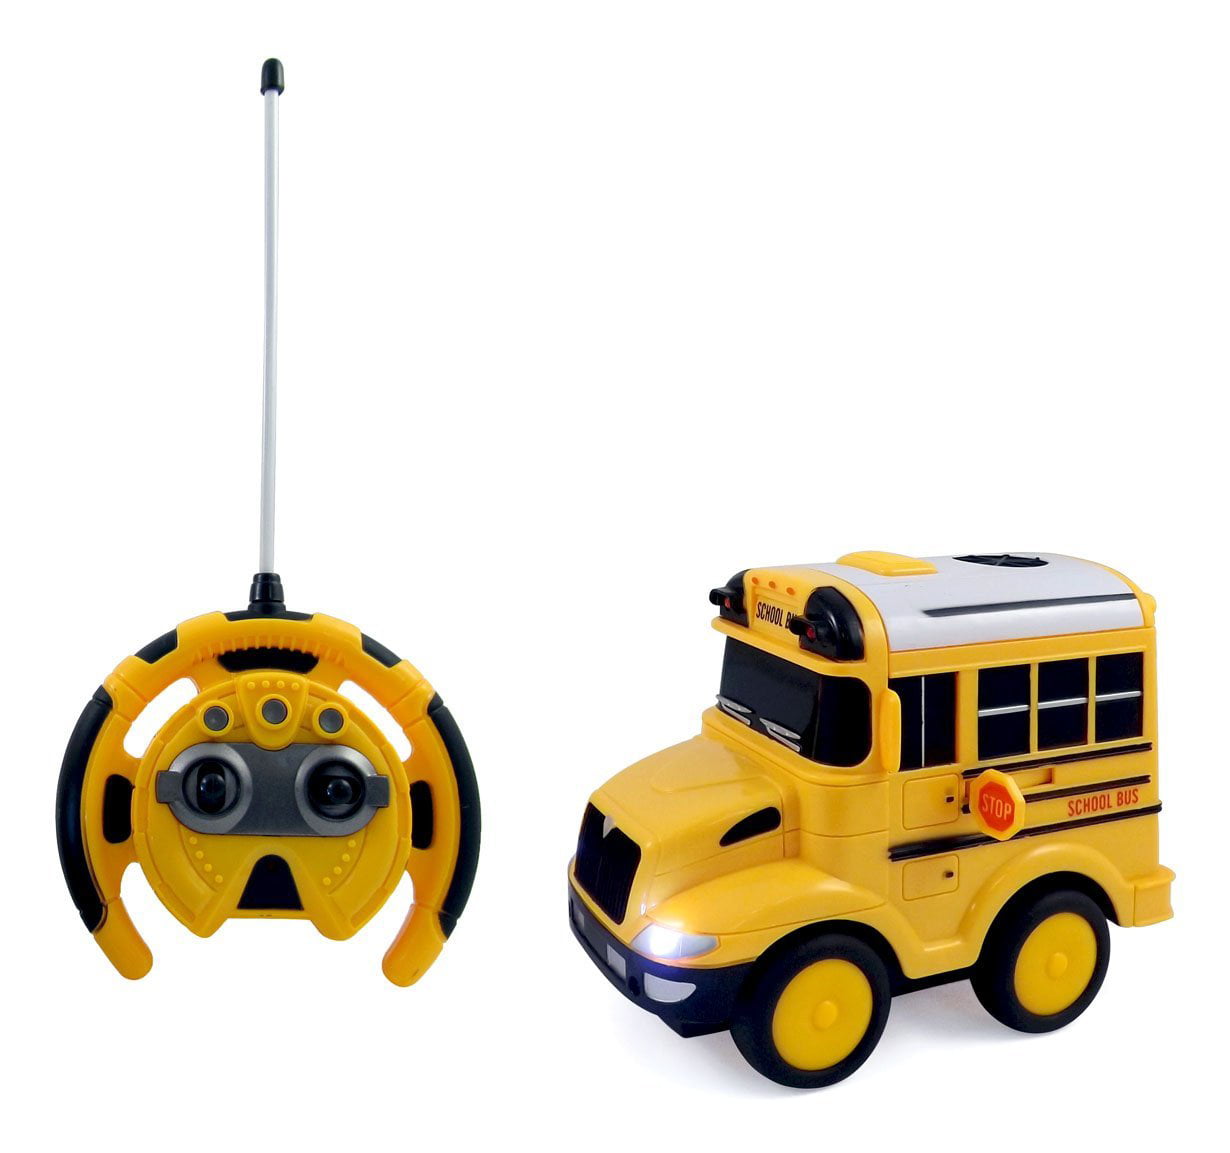 toy bus remote control